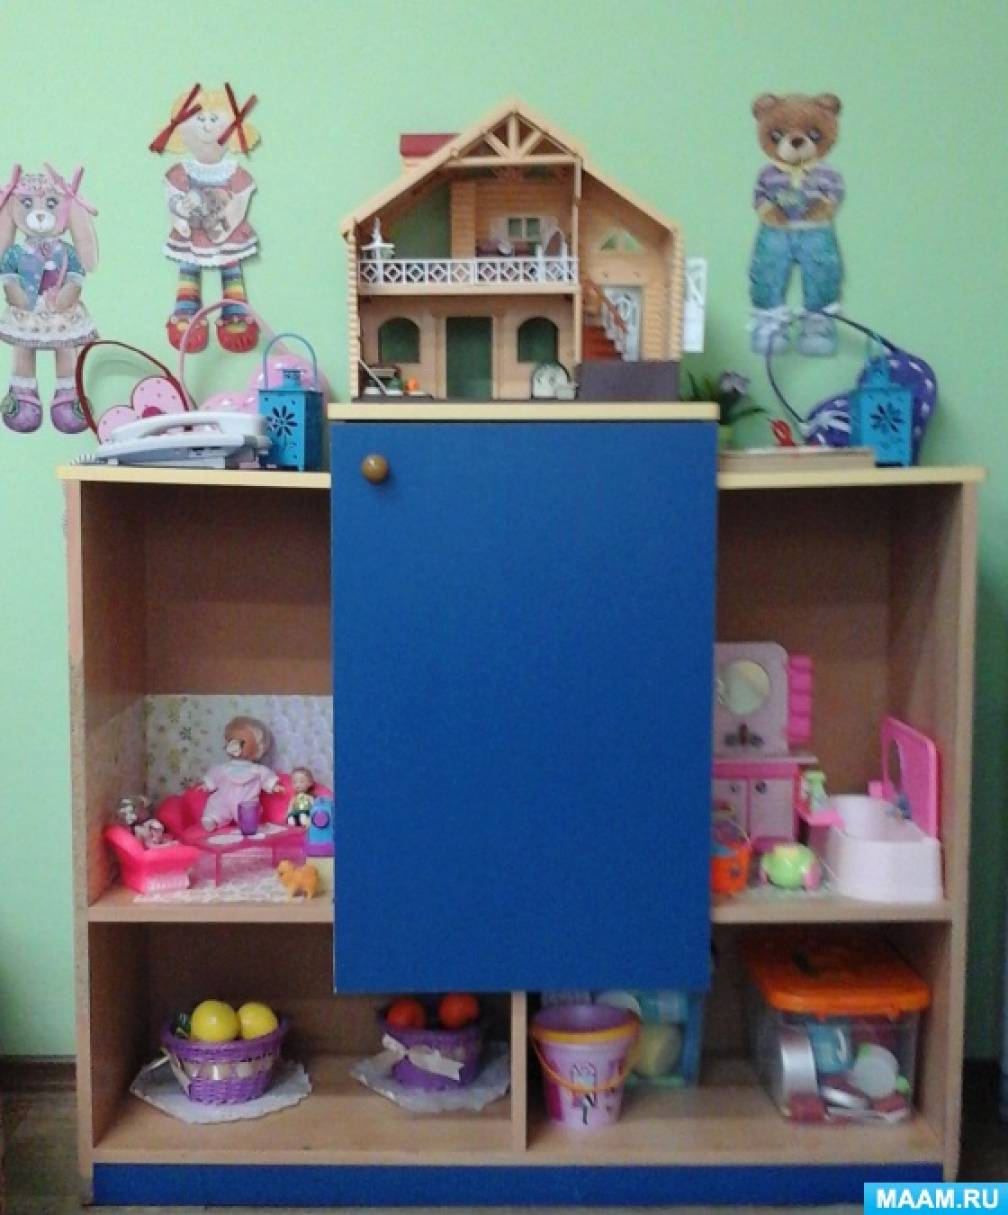 Мебельные уголки в детский сад